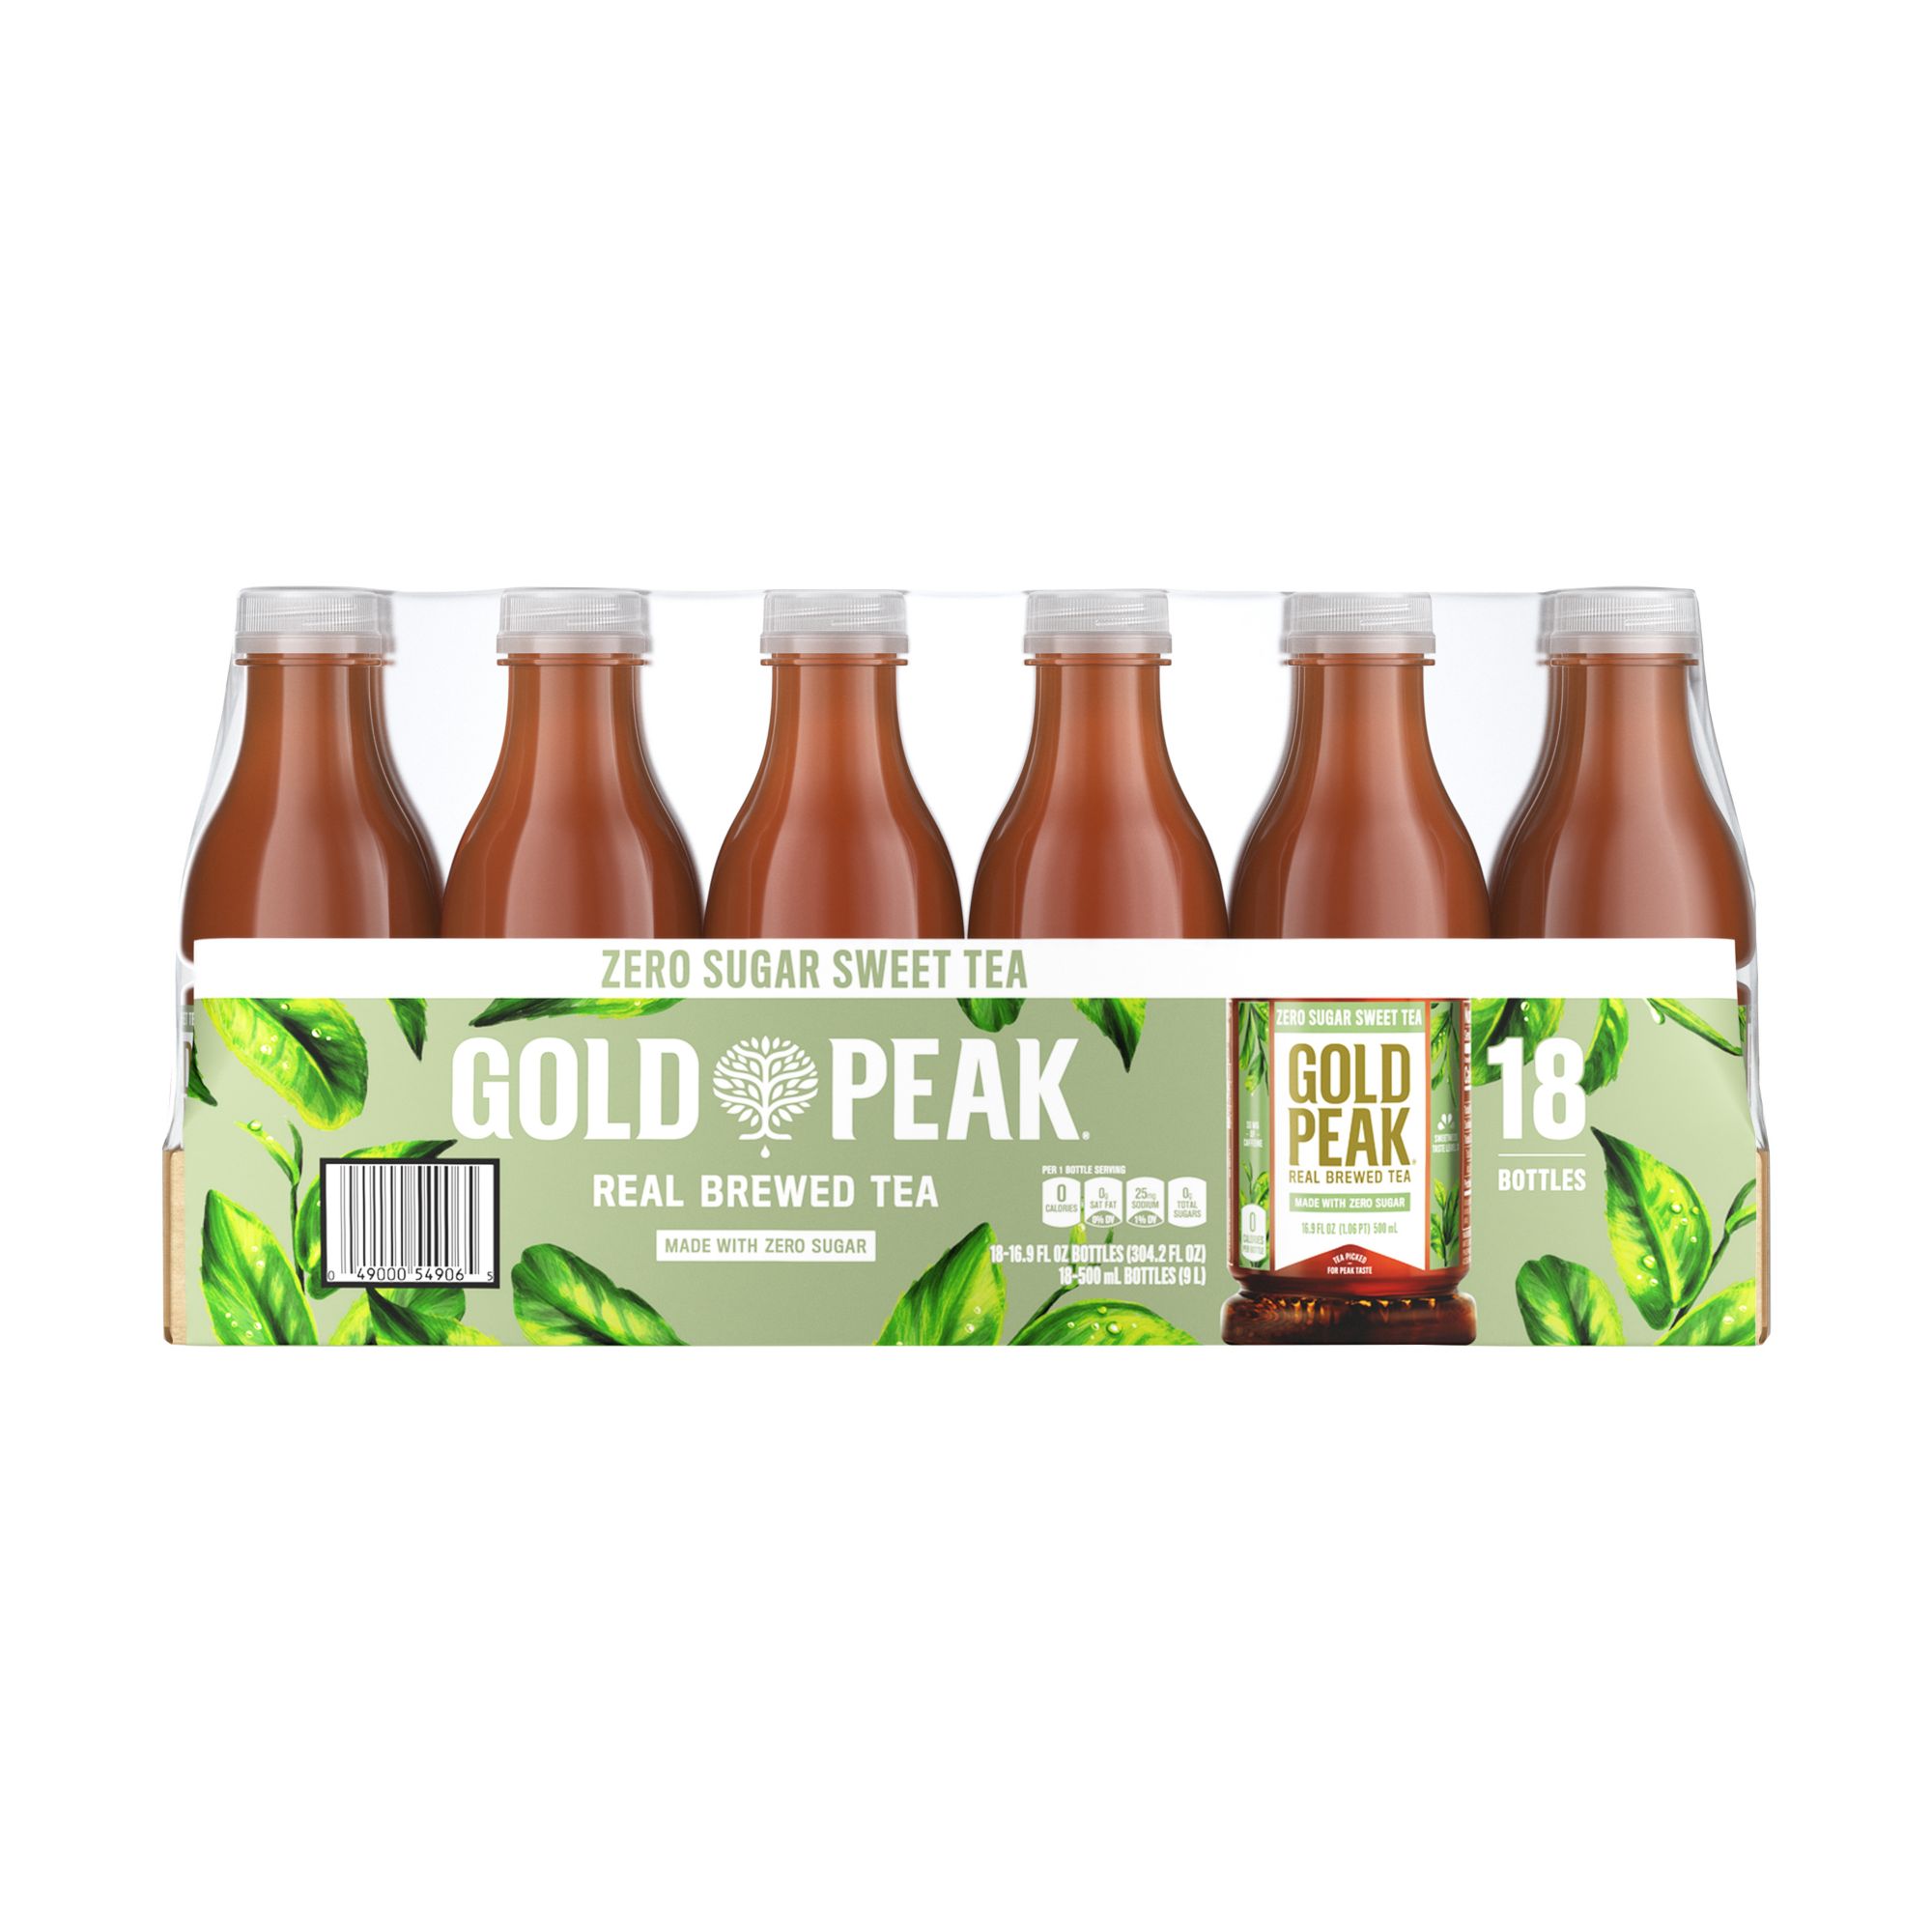 Pure Leaf Real Brewed, Iced Sweet Tea Bottle Tea Drink, 16.9 fl oz, 12  Bottles 